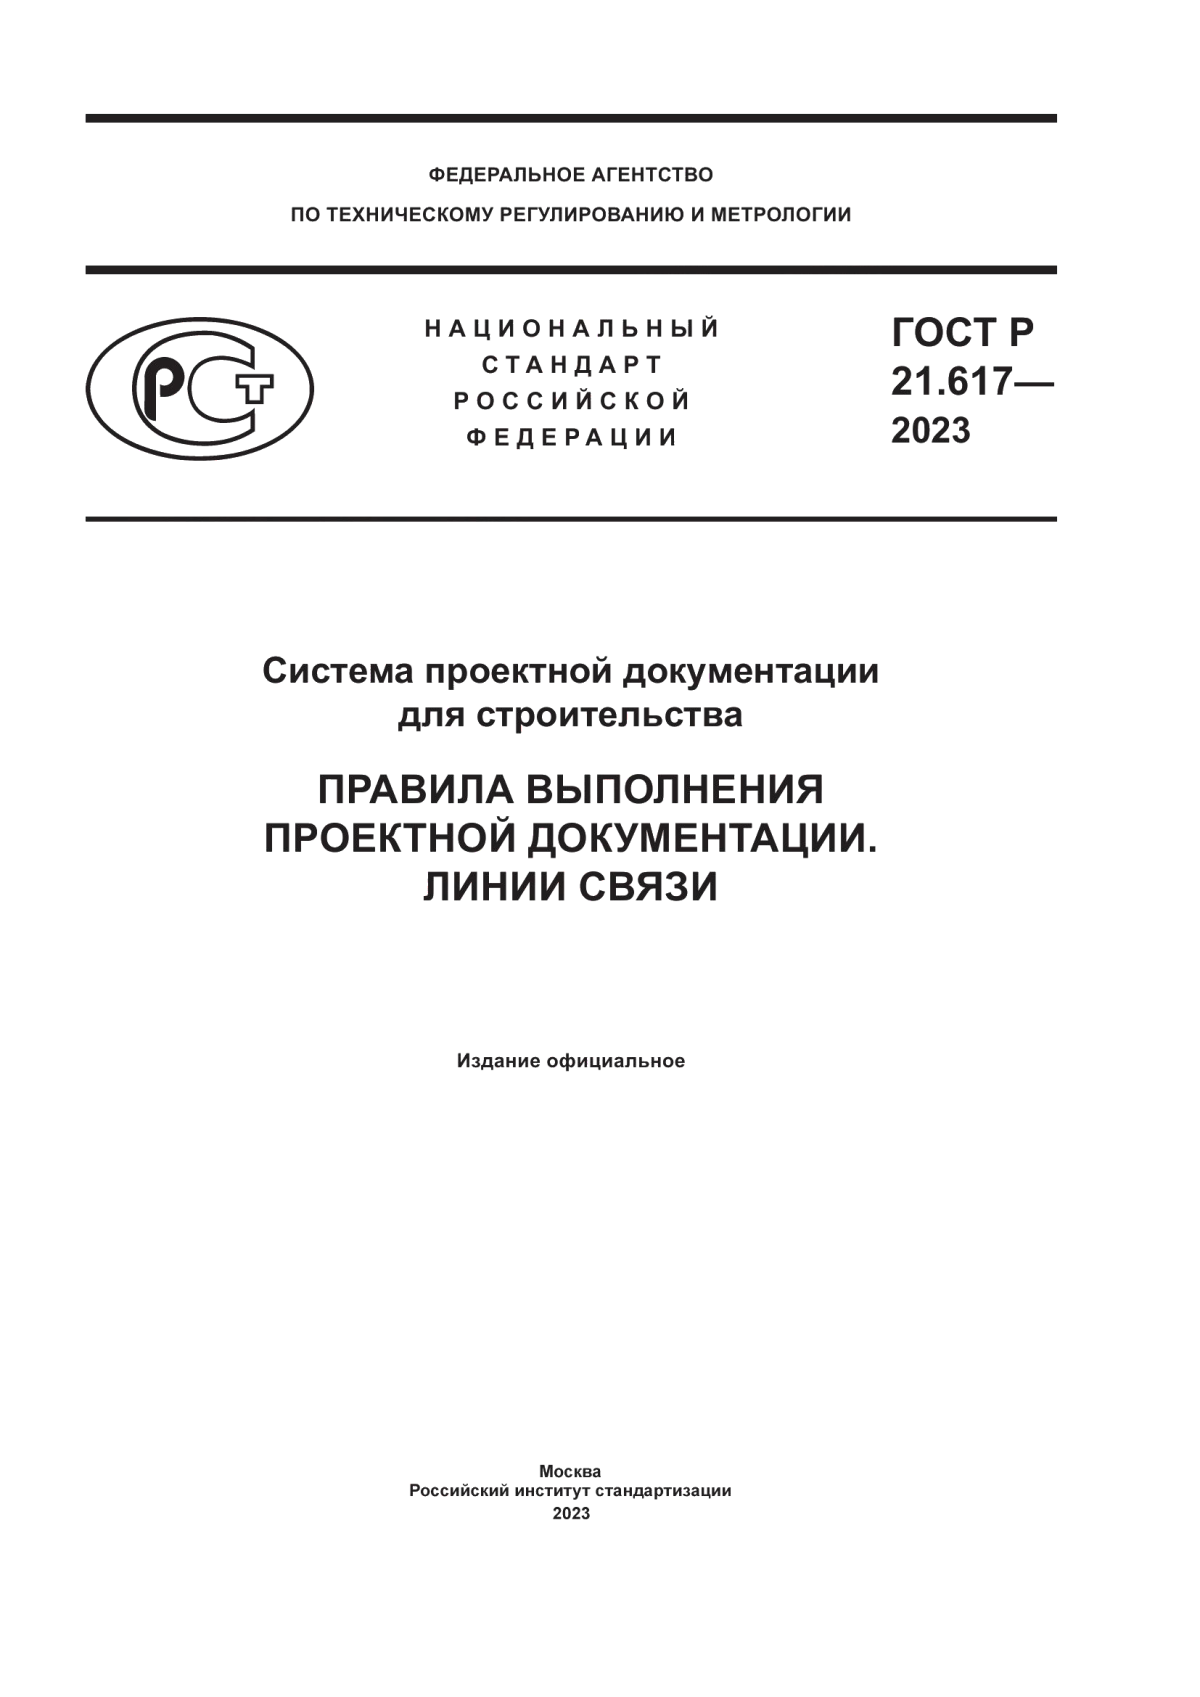 ГОСТ Р 21.617-2023 Система проектной документации для строительства. Правила выполнения проектной документации. Линии связи